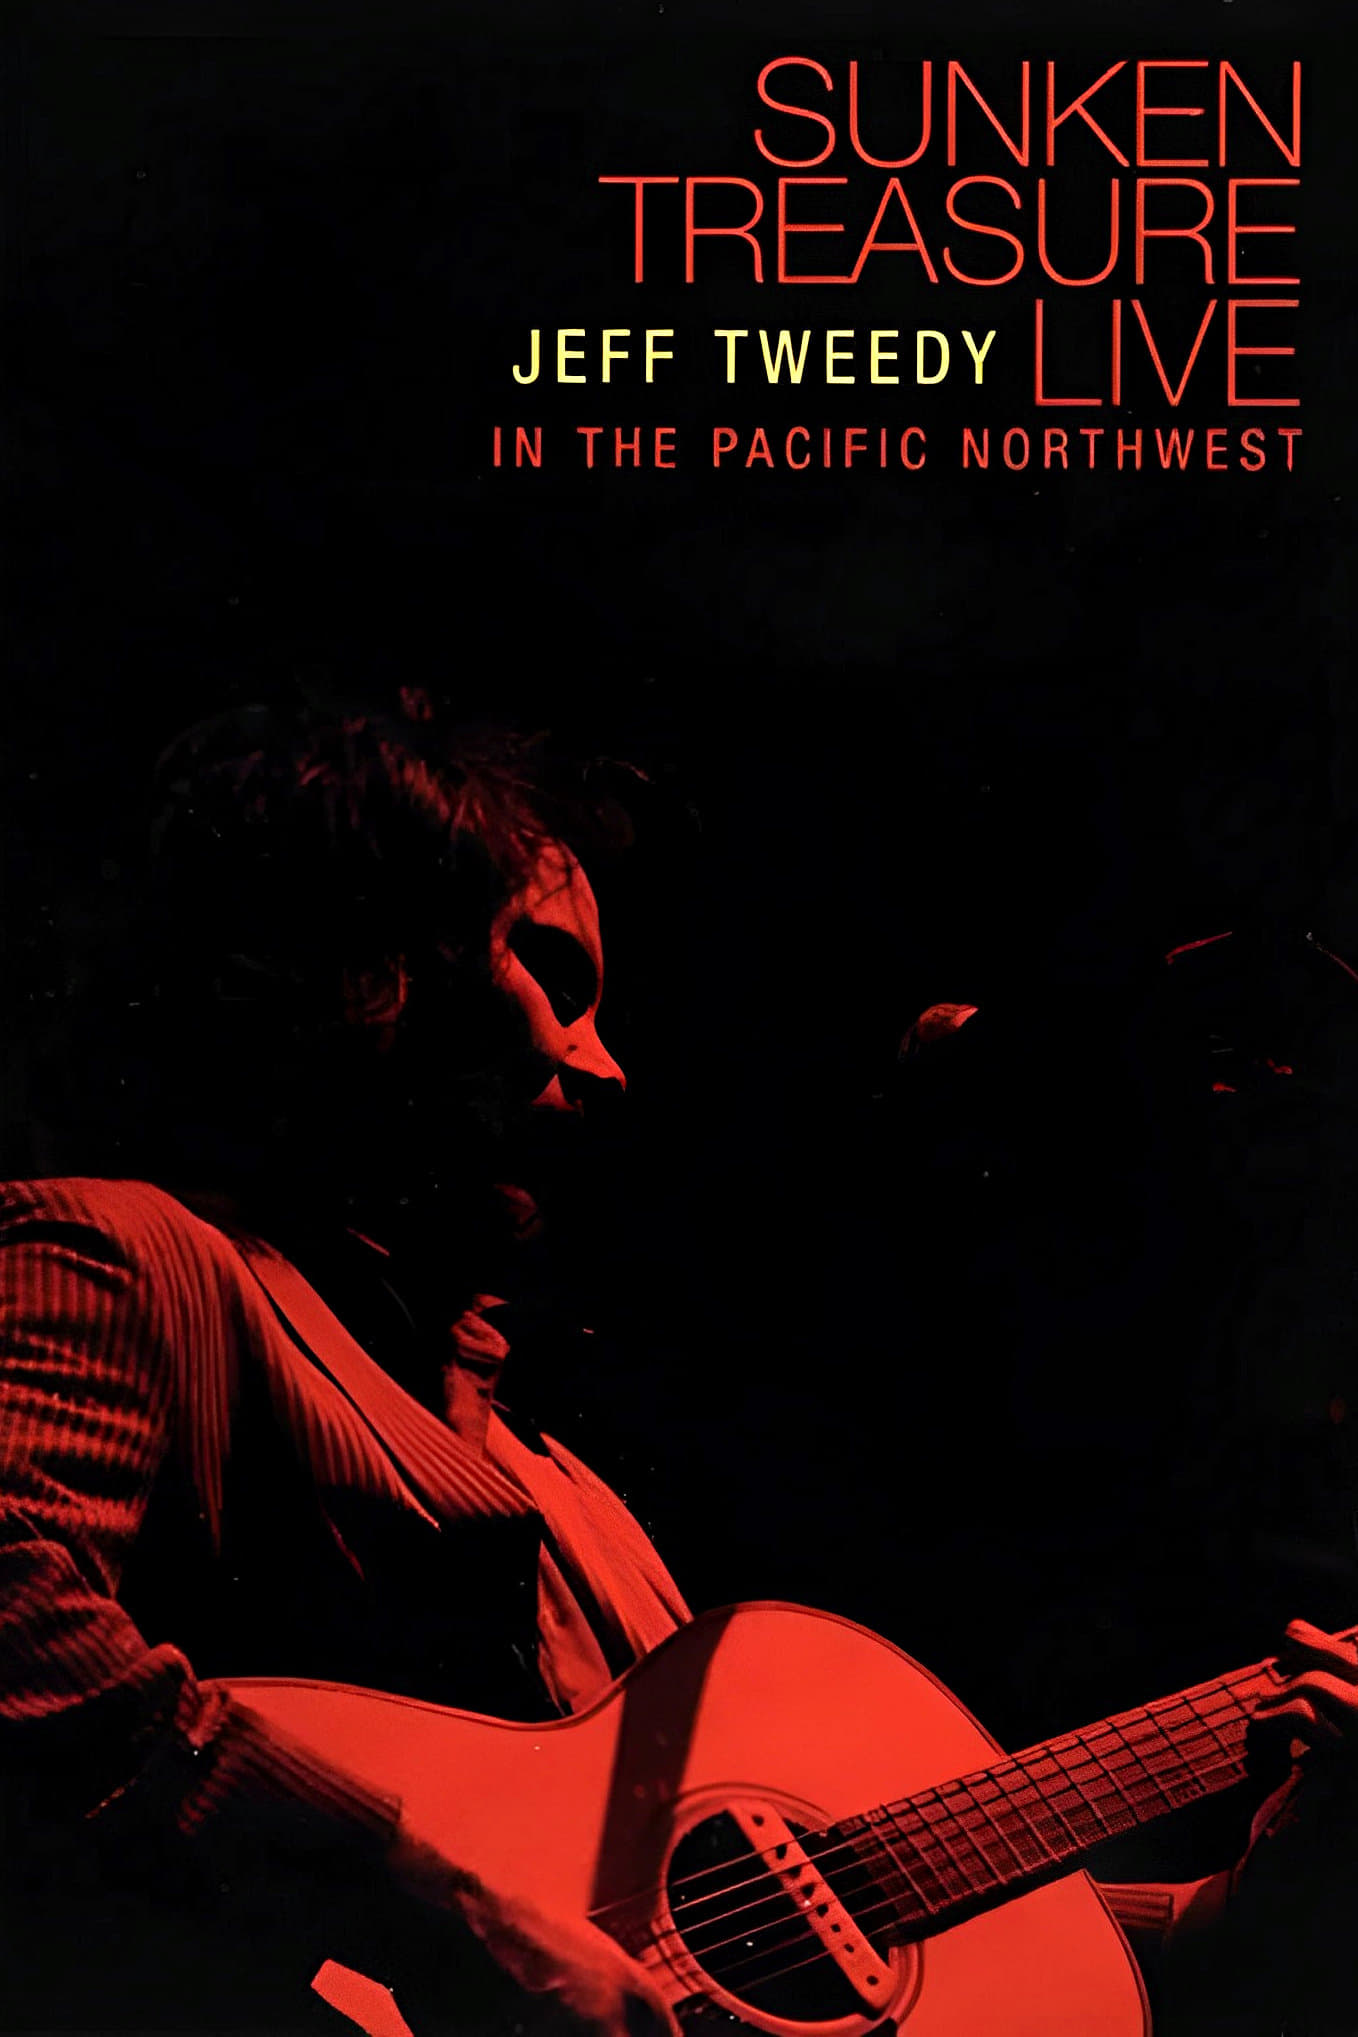 Jeff Tweedy: Sunken Treasure - Live in the Pacific Northwest